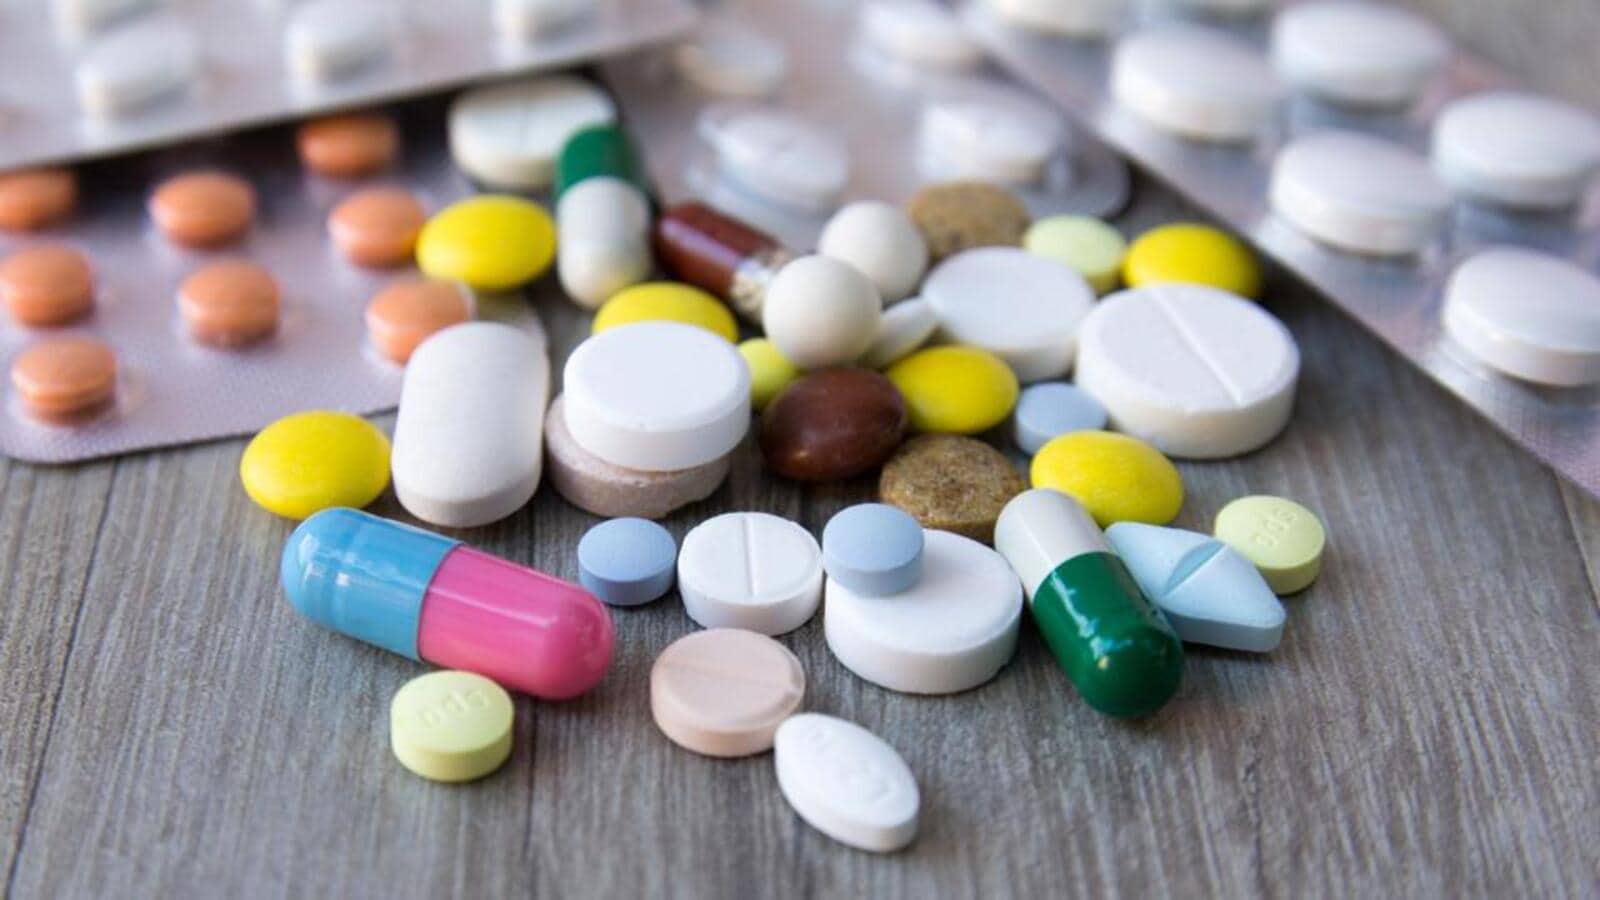 16 करोड़ रुपये की दवाएं खरीदेगी पीएमसी